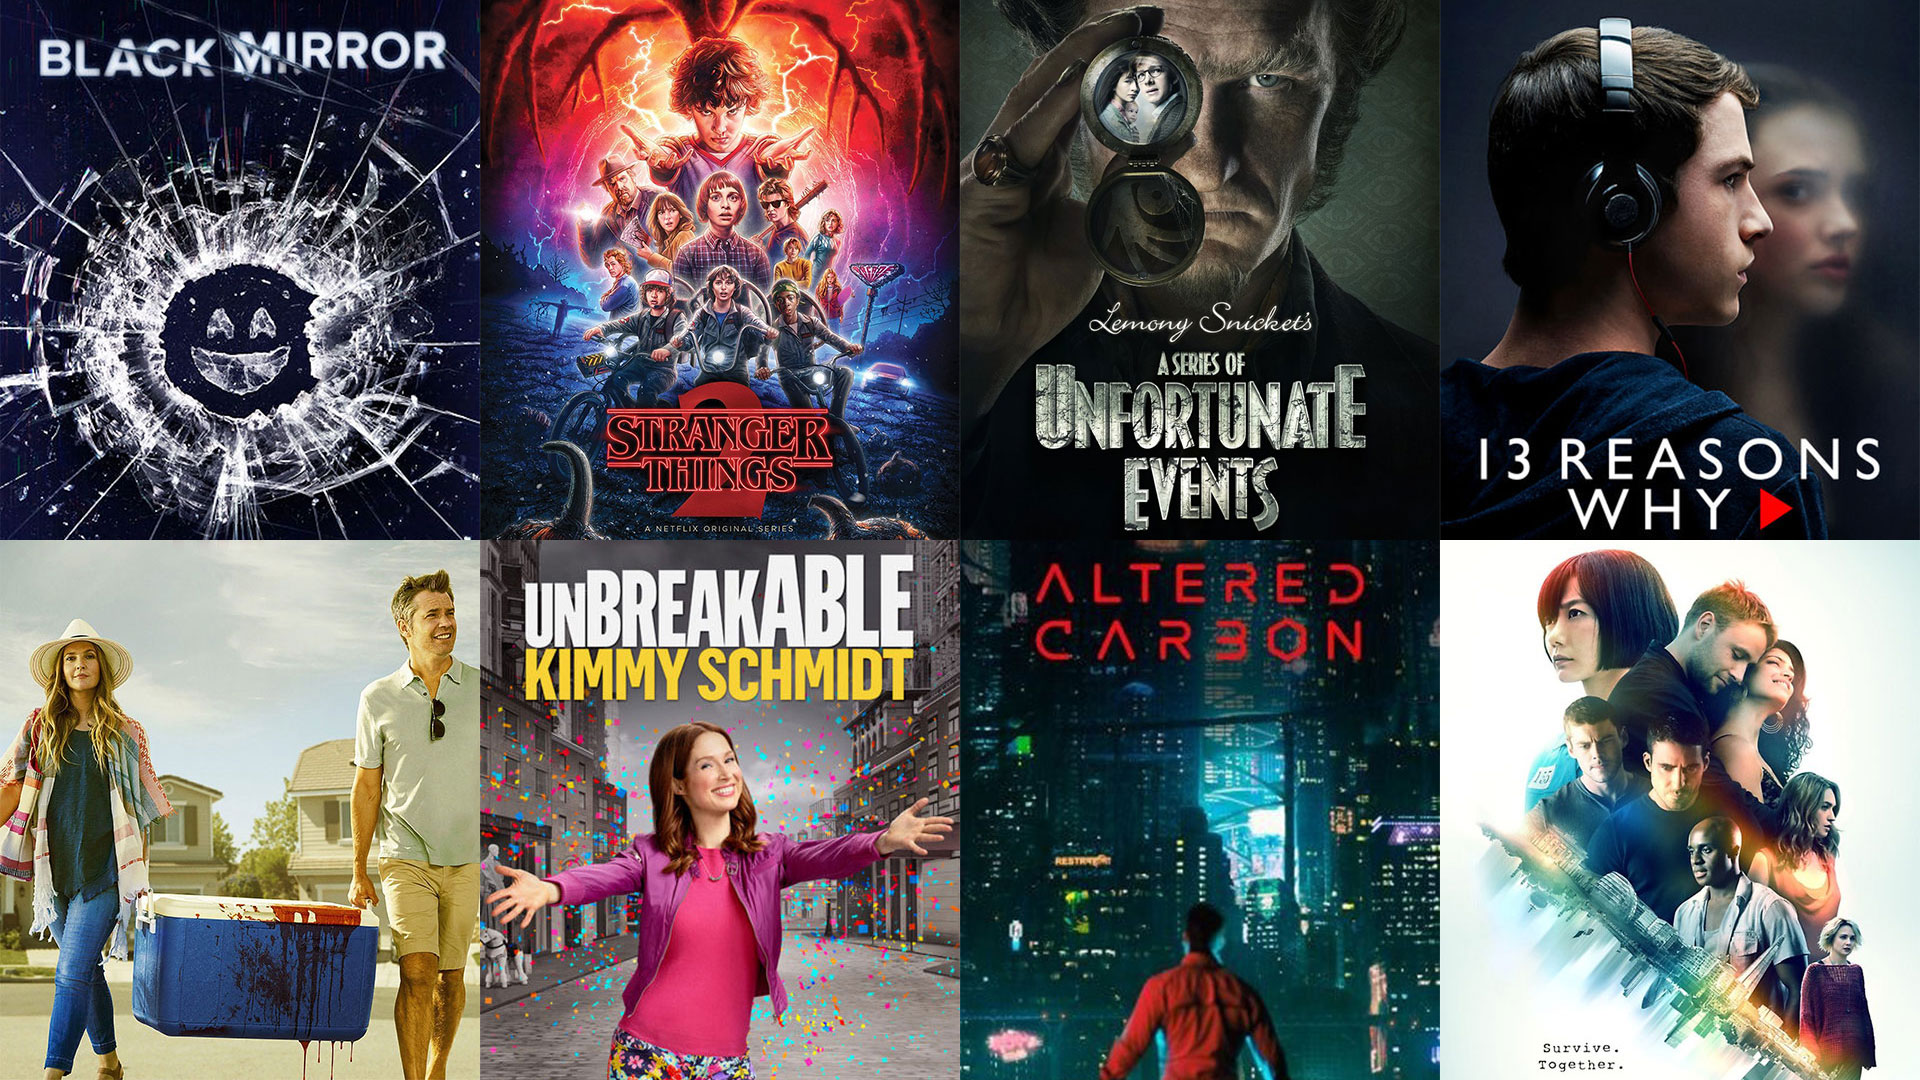 Top 8 Netflix Original Series To Binge Watch